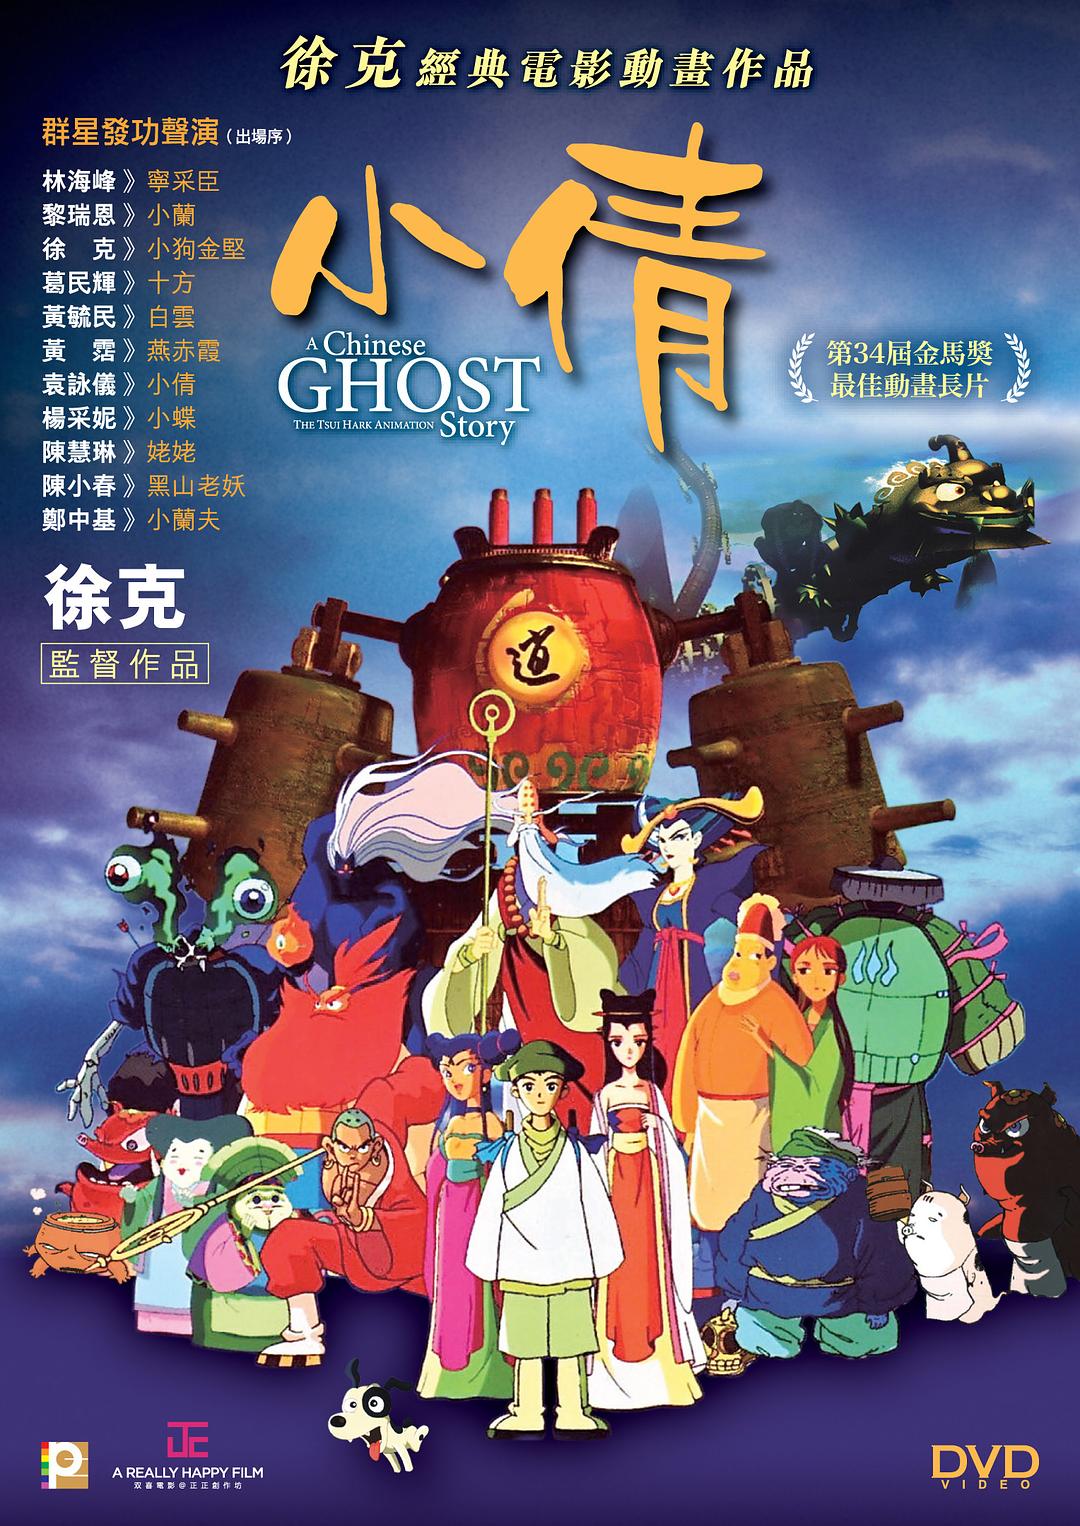 [小倩].A.Chinese.Ghost.Story.The.Tsui.Hark.Animation.1997.HKG.BluRay.1080p.AVC.TrueHD.5.1-Doraemon    22.99G-2.jpg